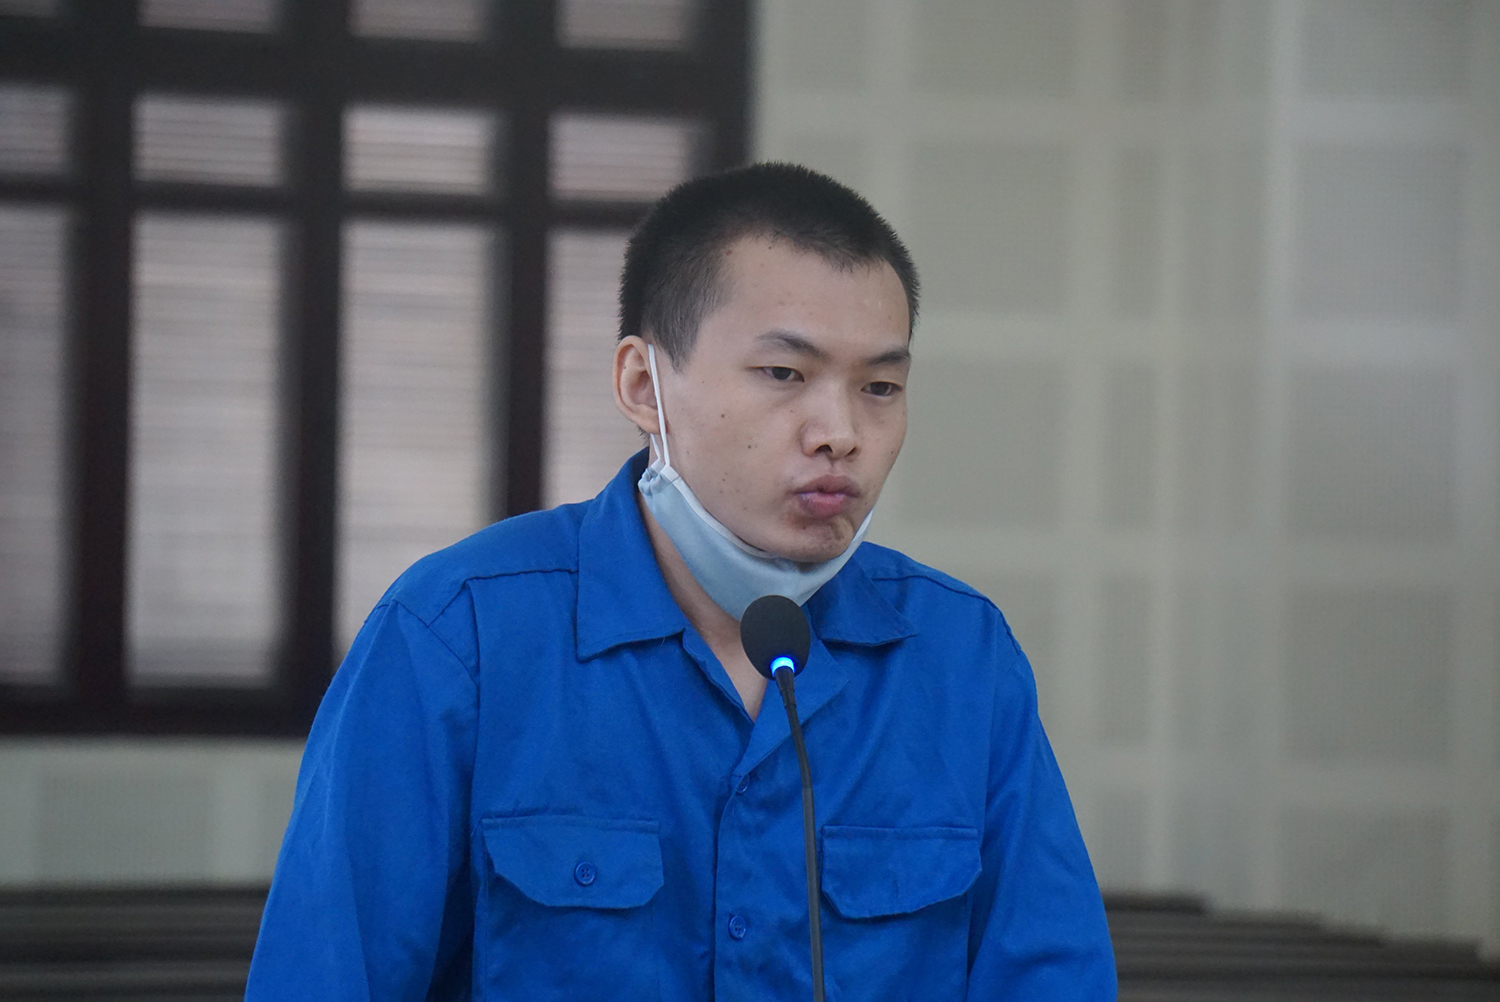 Đà Nẵng: Tử hình đối tượng người Trung Quốc về tội giết người - Ảnh 1.